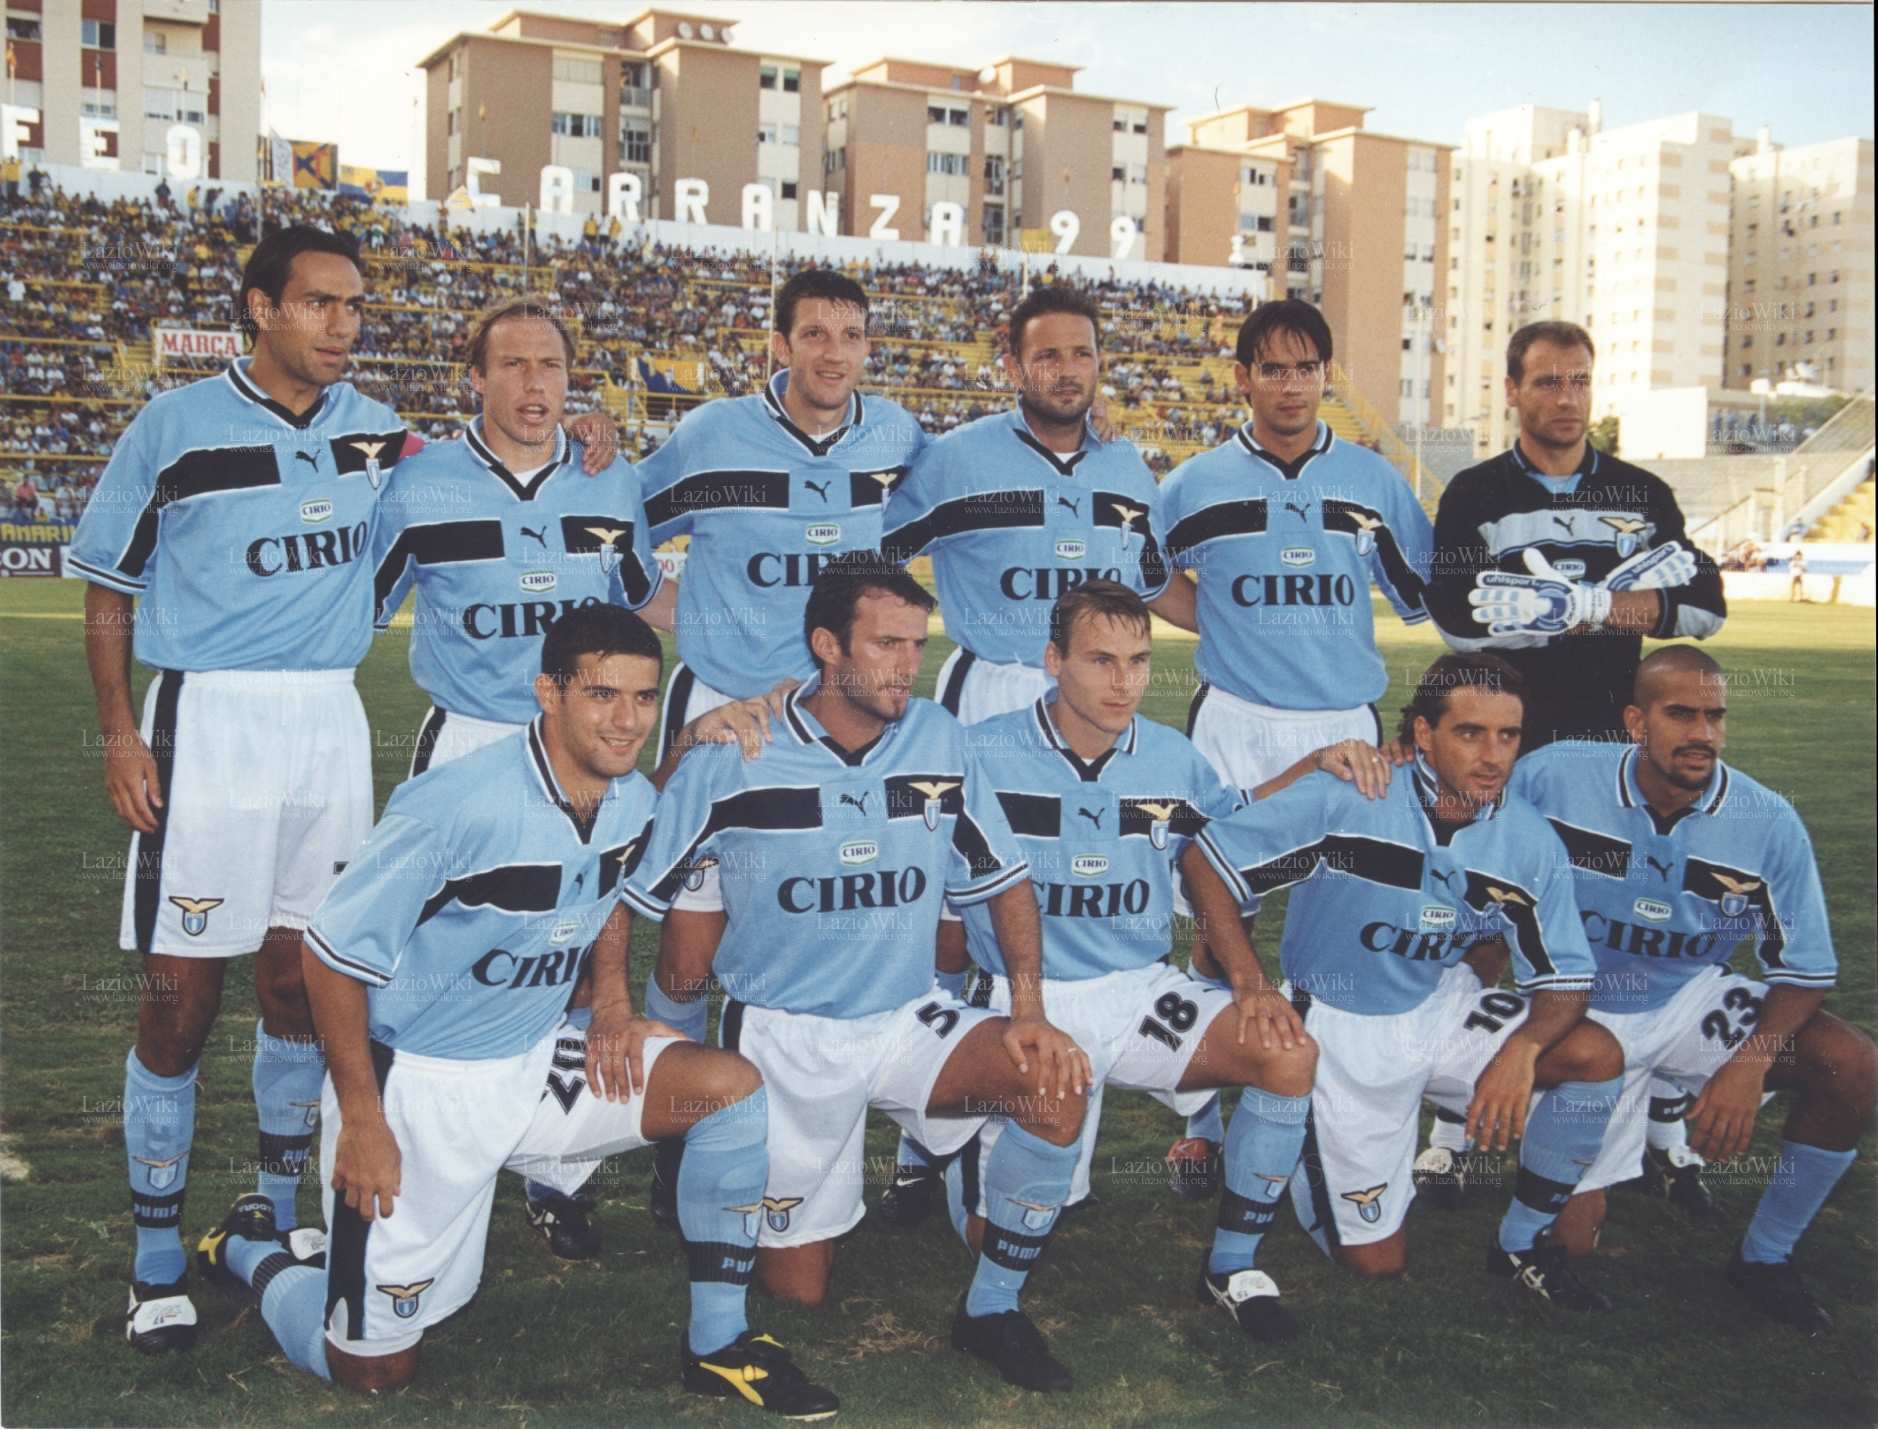 99-00 Lazio Retro Soccer Jersey Shirt